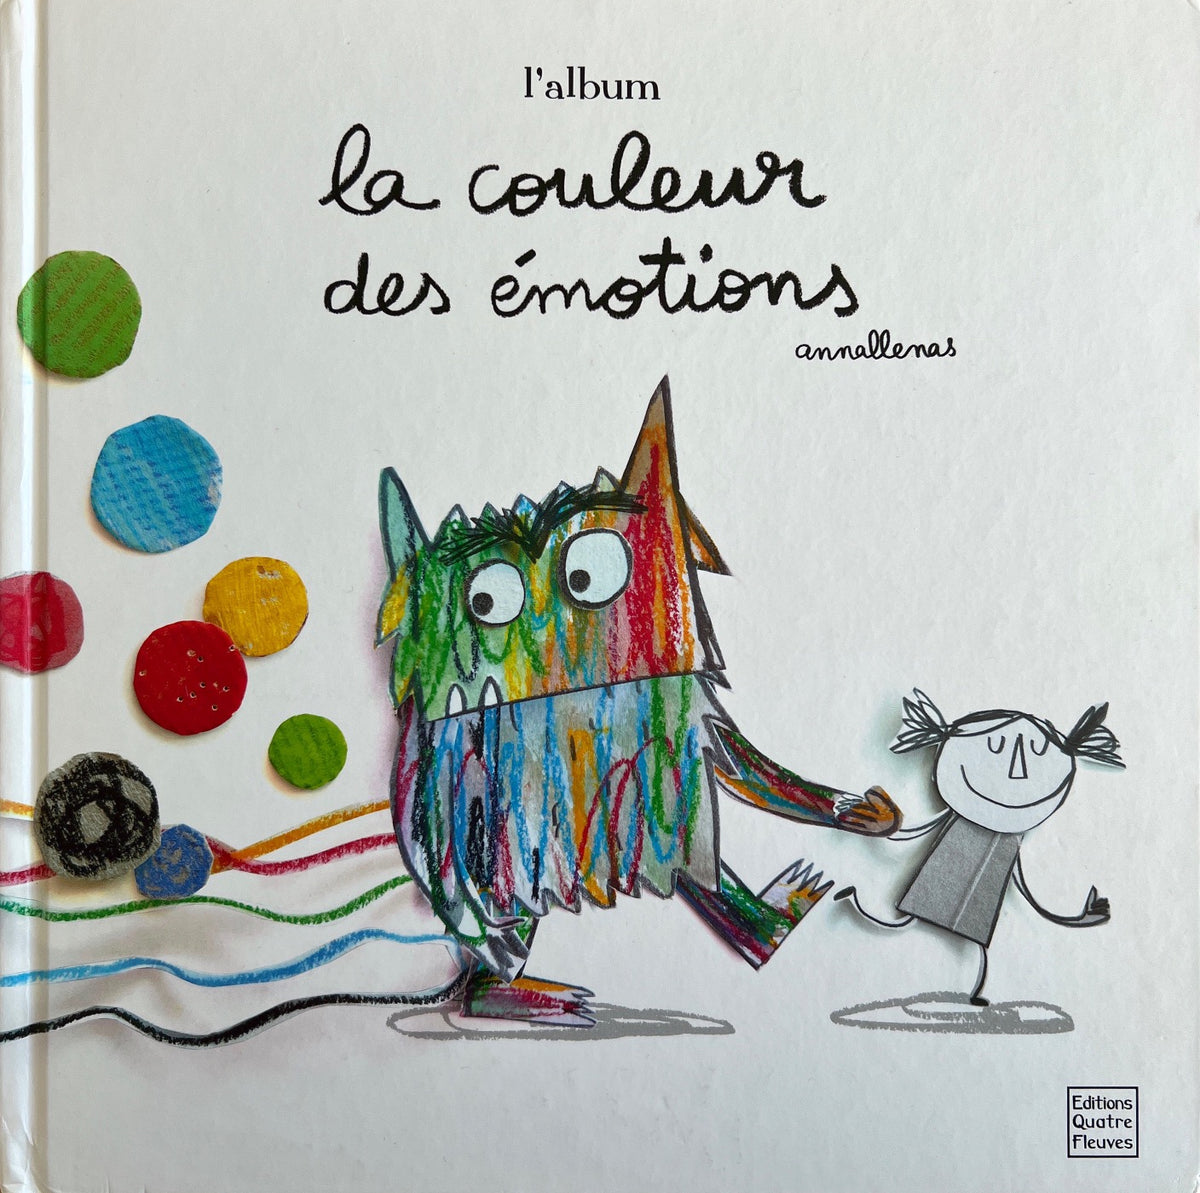 La couleur des émotions - Book in French